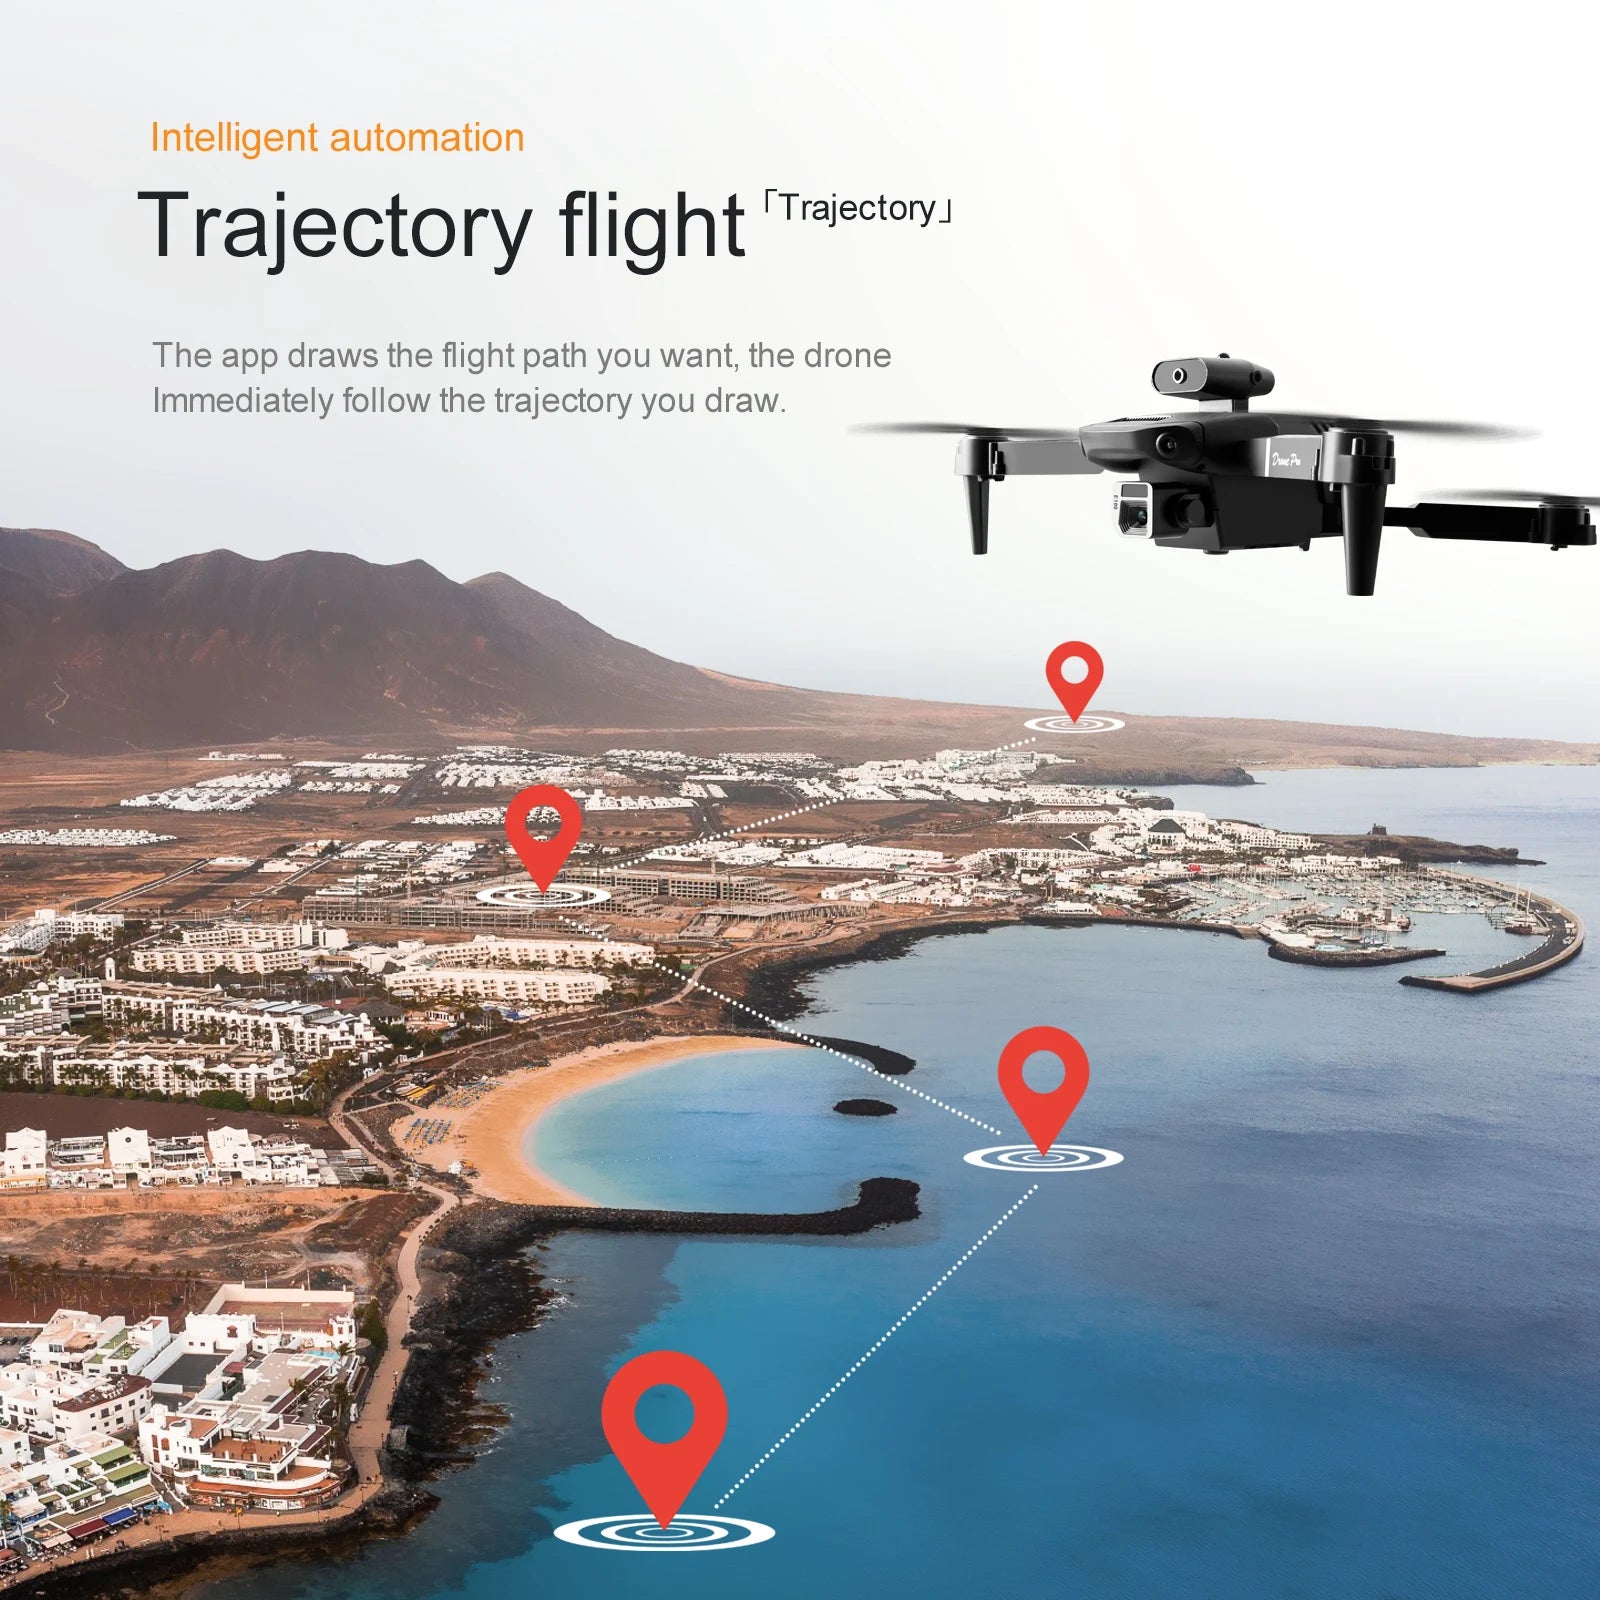 KBDFA E100 Mini Drone, intelligent automation trajectory flight ttrajectoryj the app draws